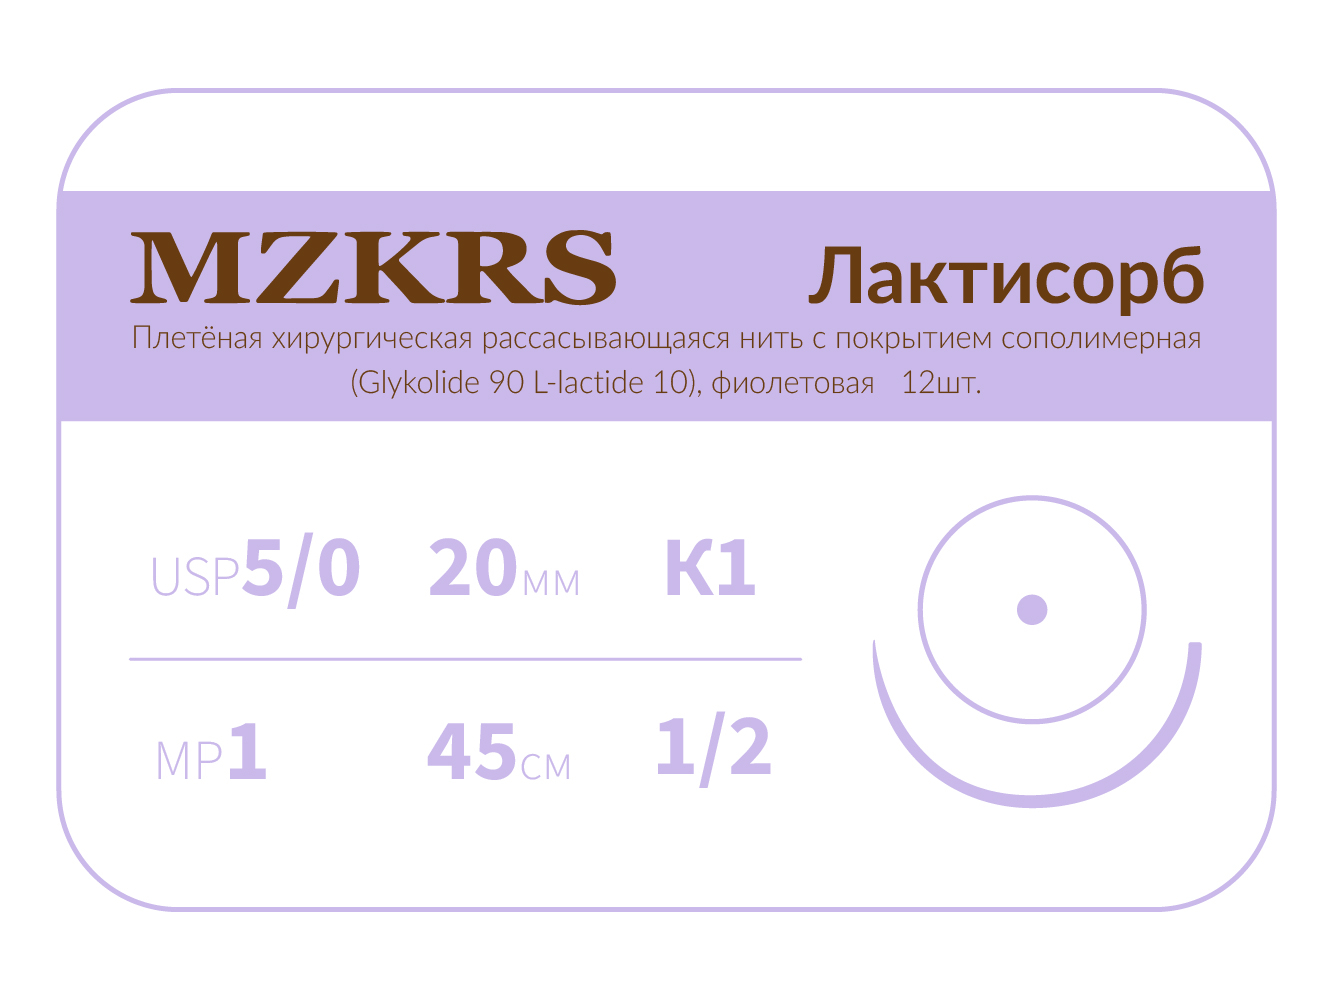 2012К1-Premium-5/0 (1)45 ПГЛ ЛАКТИСОРБ хирургическая нить сополимерная, MZKRS (Россия)